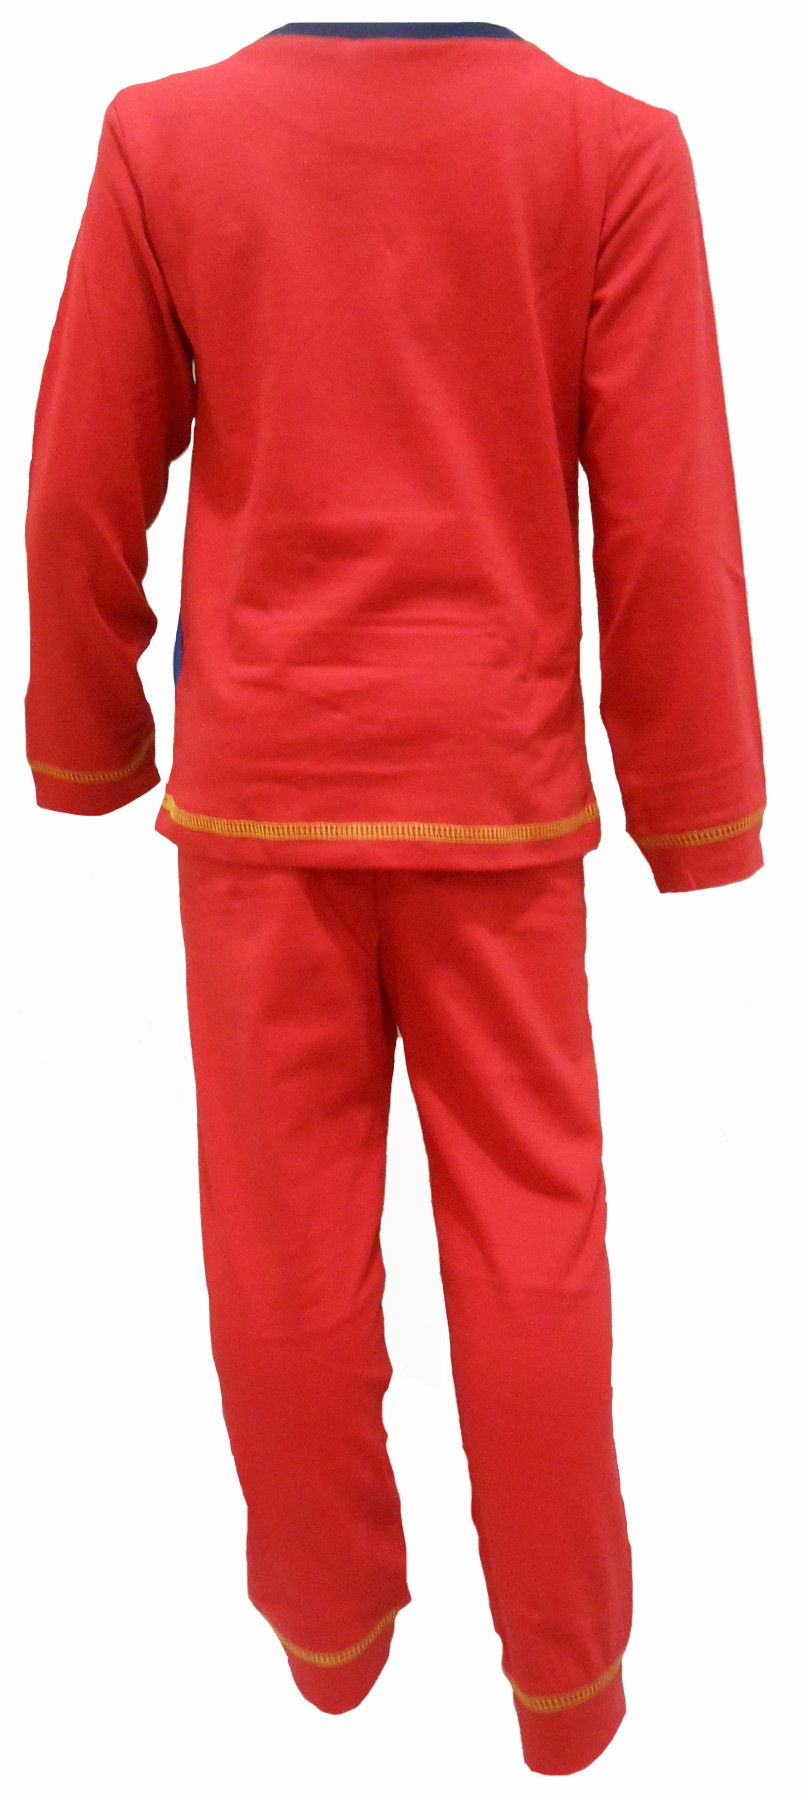 Fireman Sam Pyjamas PB343 (1).JPG  by Thingimijigs